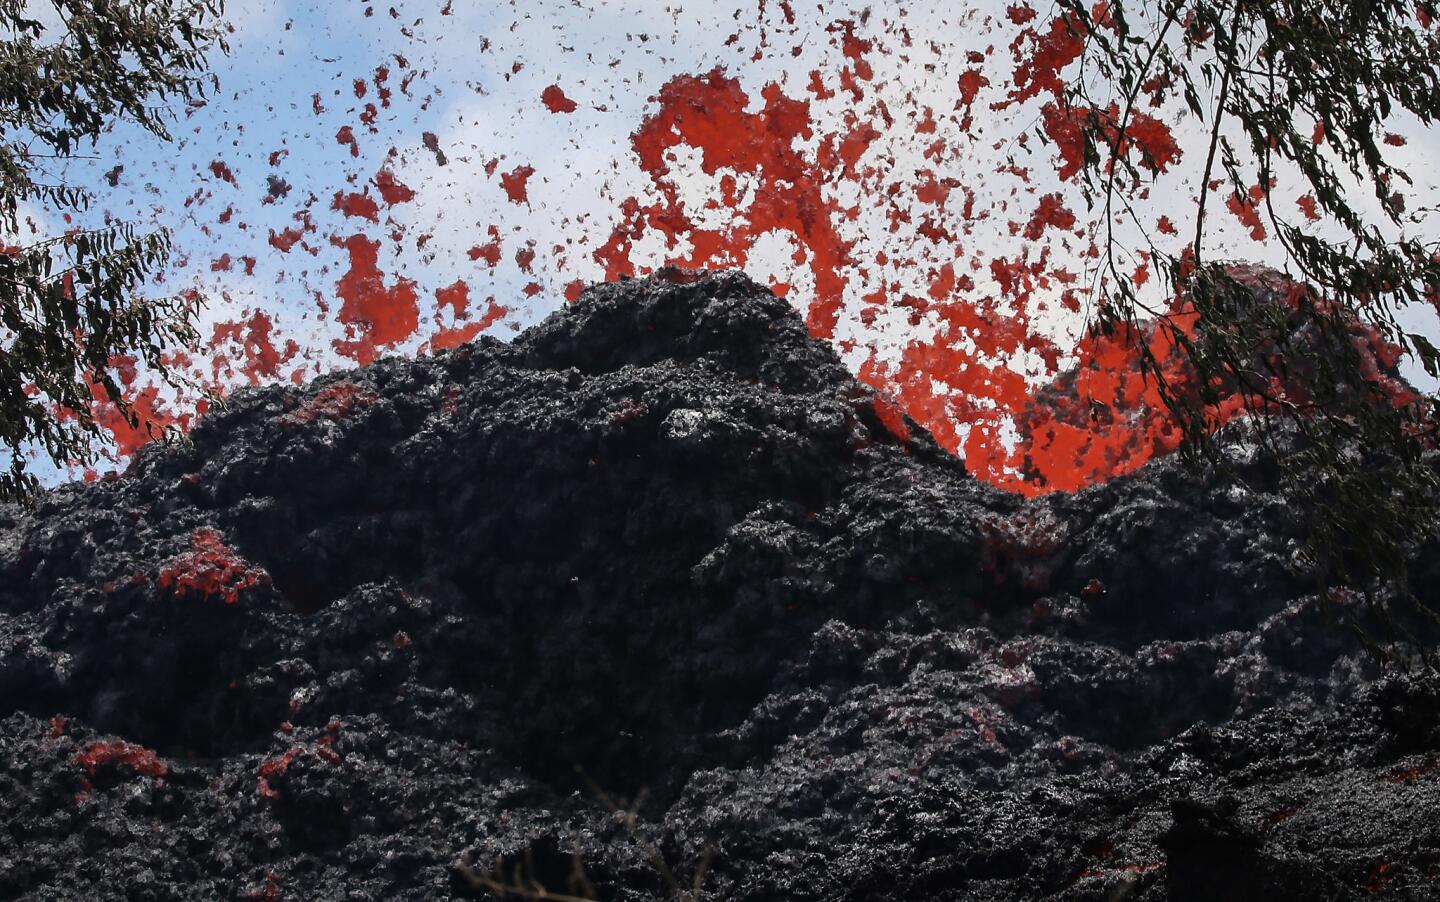 Kilauea volcano on Hawaii's Big Island